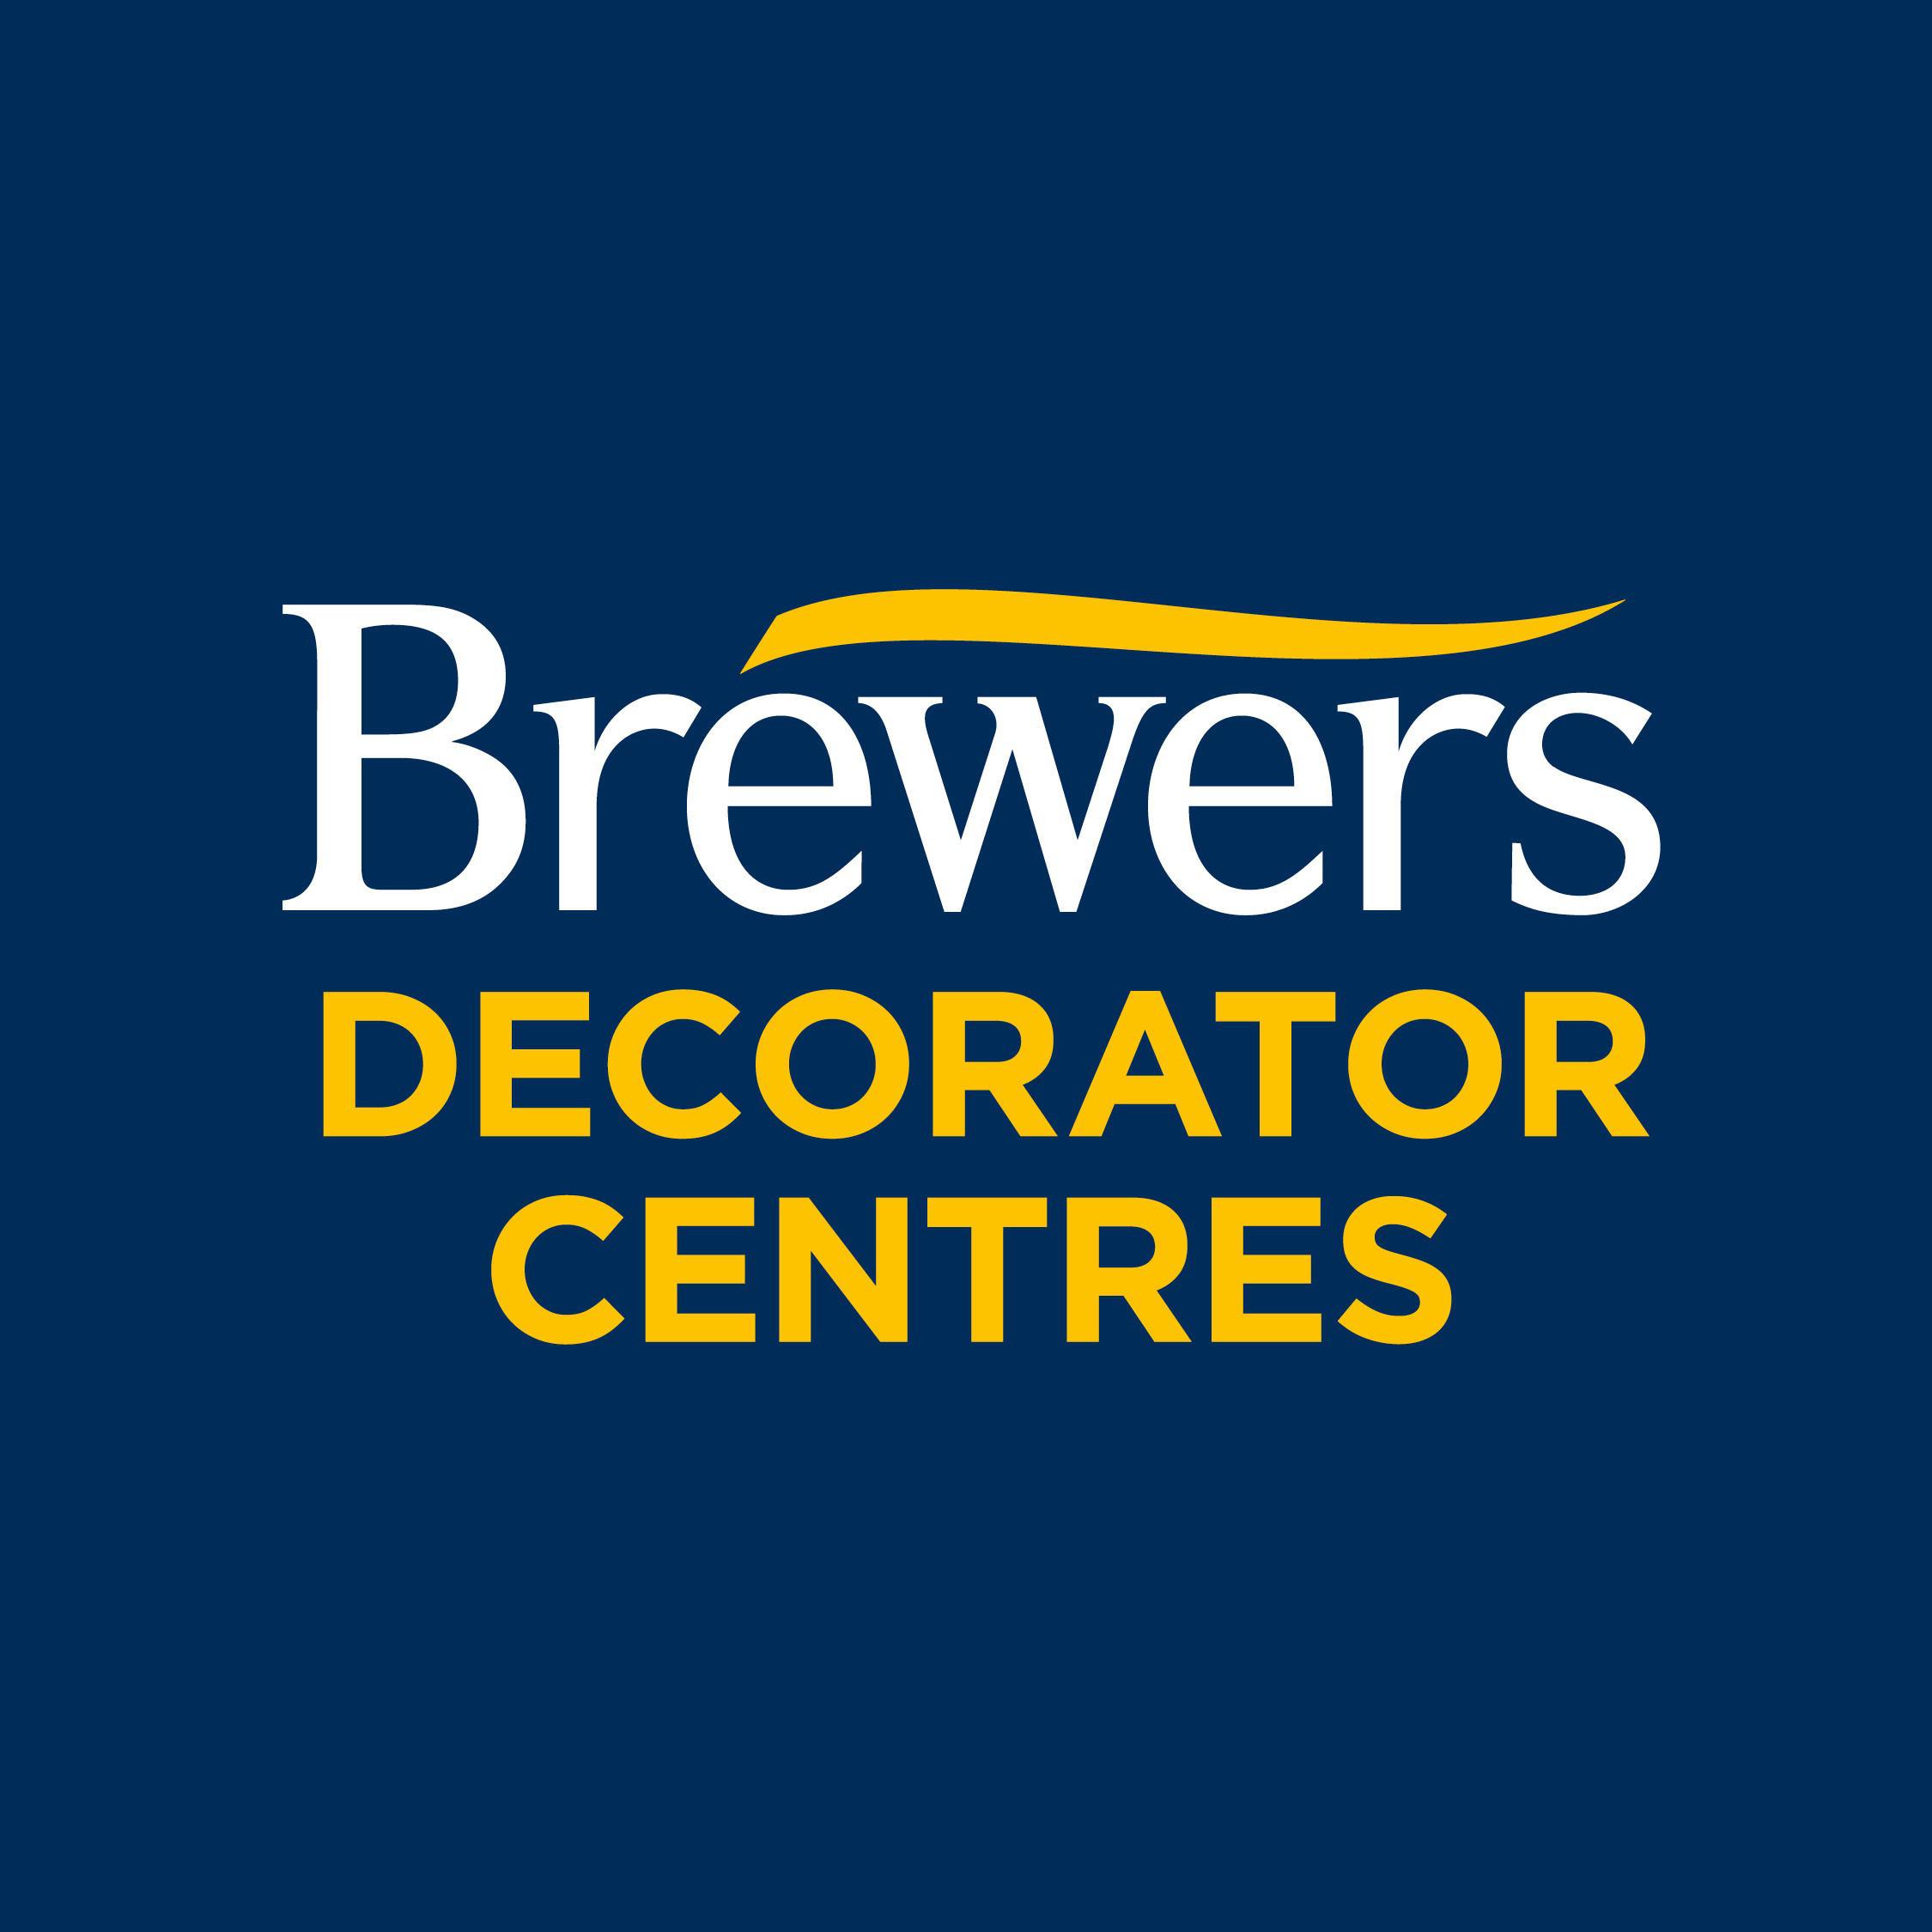 Brewers Decorator Centres - Basildon, Essex SS15 6PX - 01268 548999 | ShowMeLocal.com